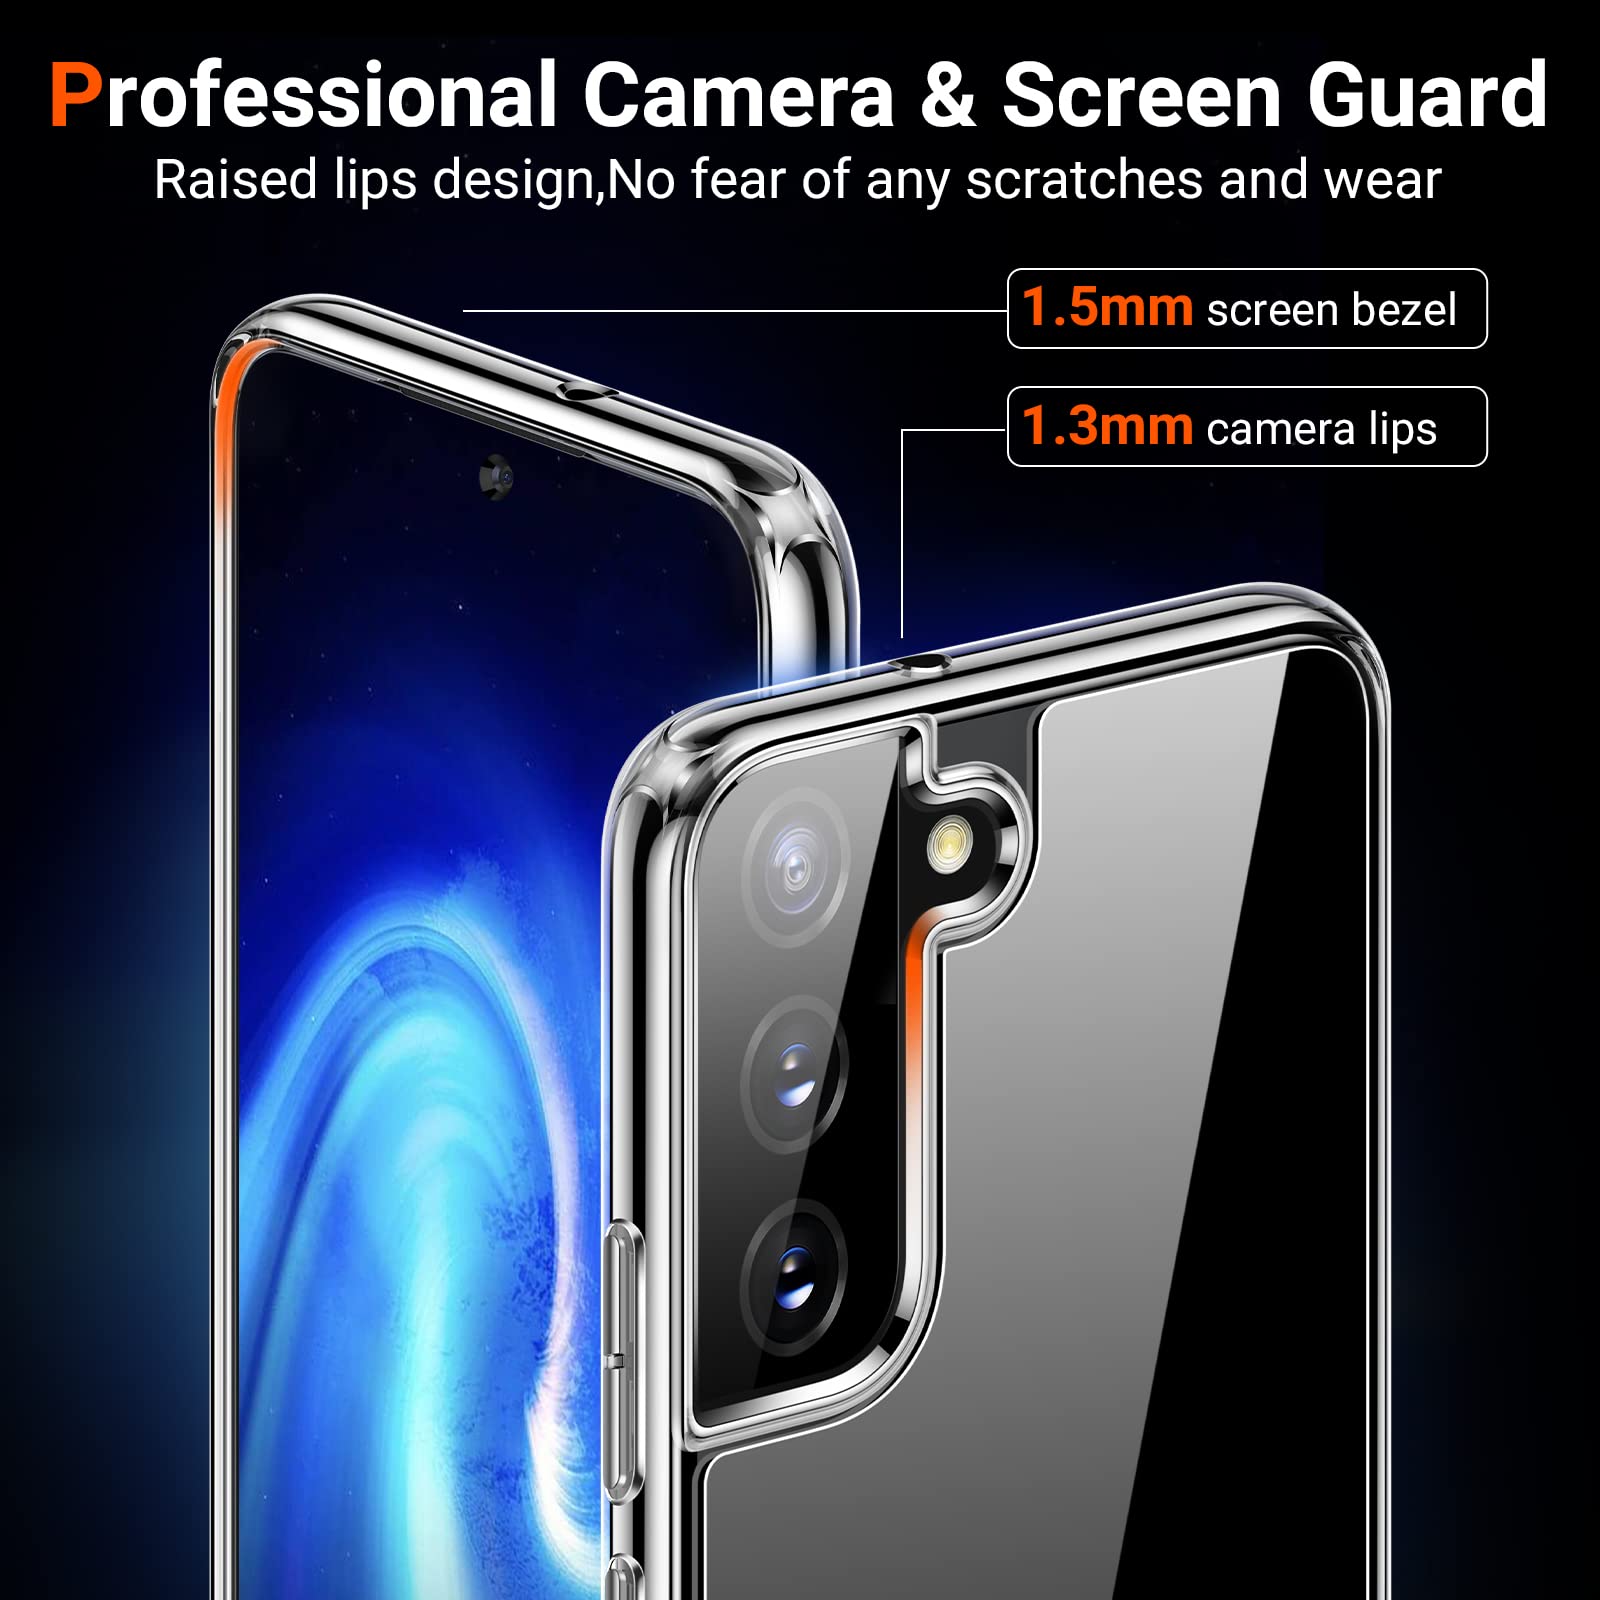 Hình ảnh Ốp lưng silicon dẻo mỏng 0.6mm cho Samsung Galaxy S22 hiệu Ultra Thin độ trong tuyệt đối- Hàng nhập khẩu